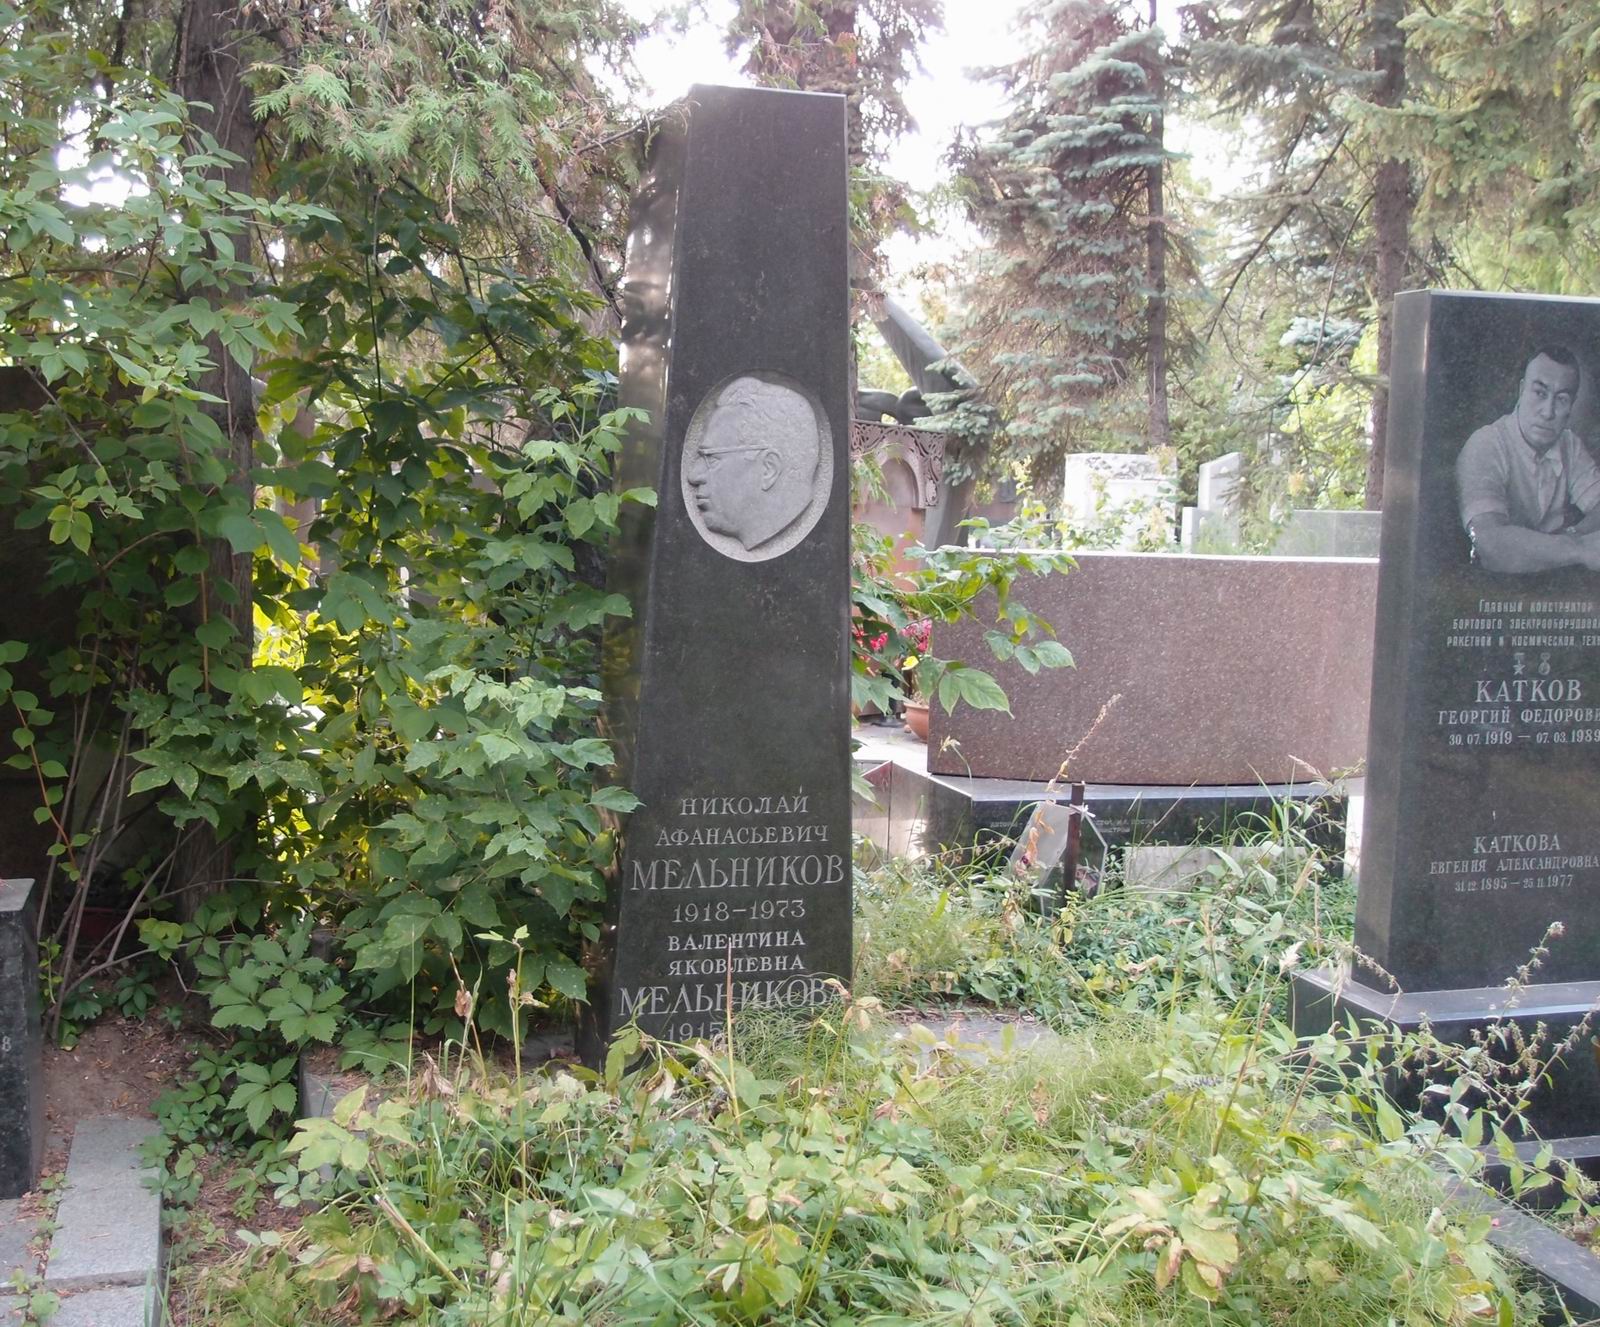 Памятник на могиле Мельникова Н.А. (1918-1973), ск. Г.Потапов, арх. Т.Муравьёва, на Новодевичьем кладбище (7-3-17).